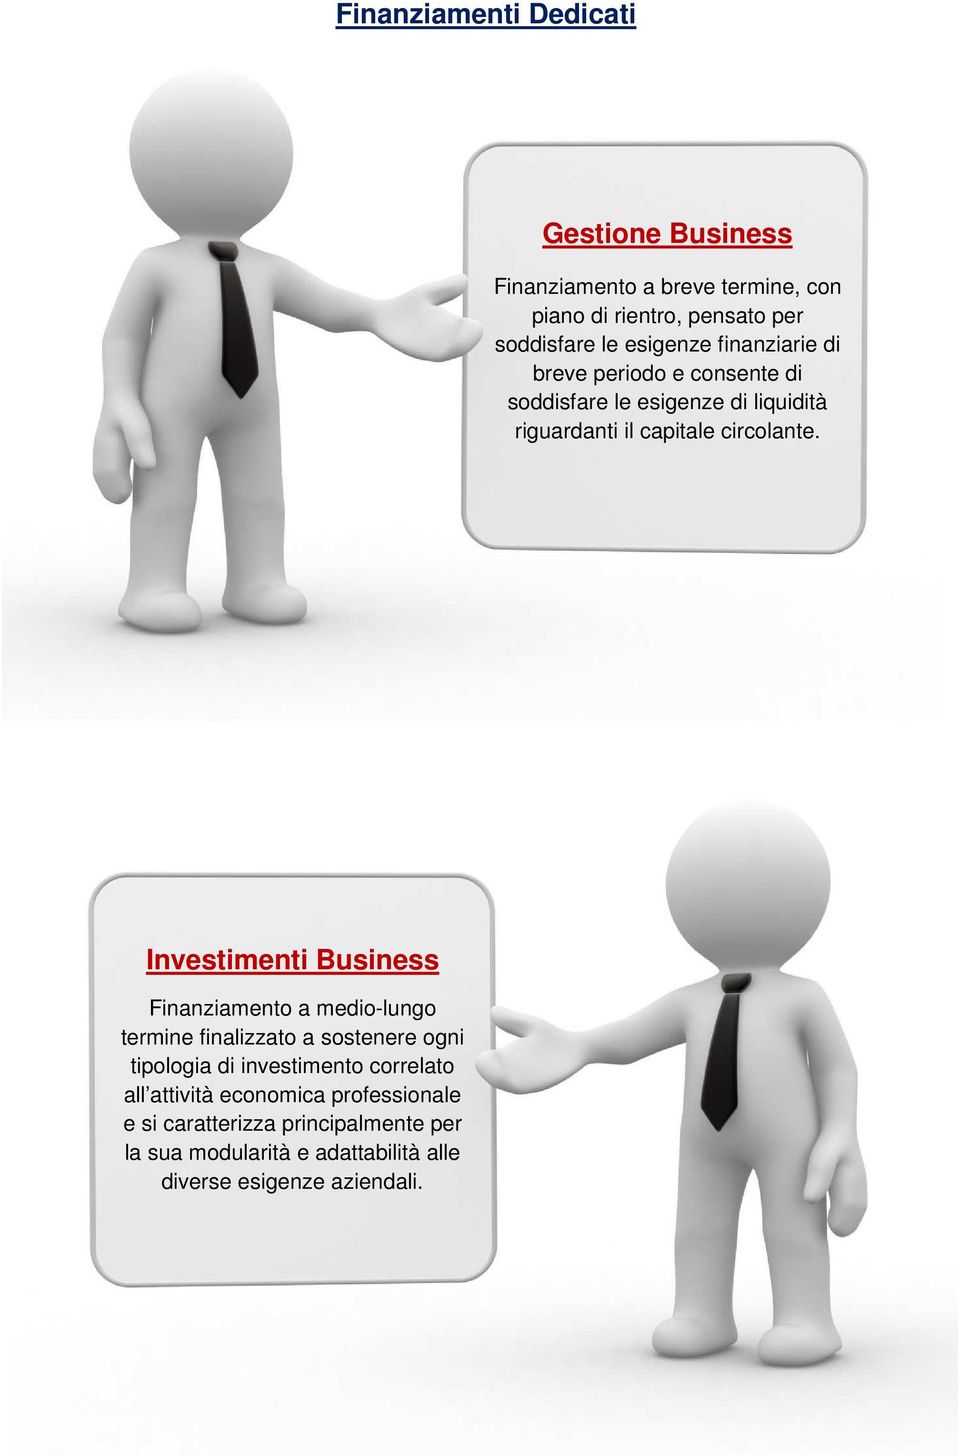 Investimenti Business Finanziamento a medio-lungo termine finalizzato a sostenere ogni tipologia di investimento